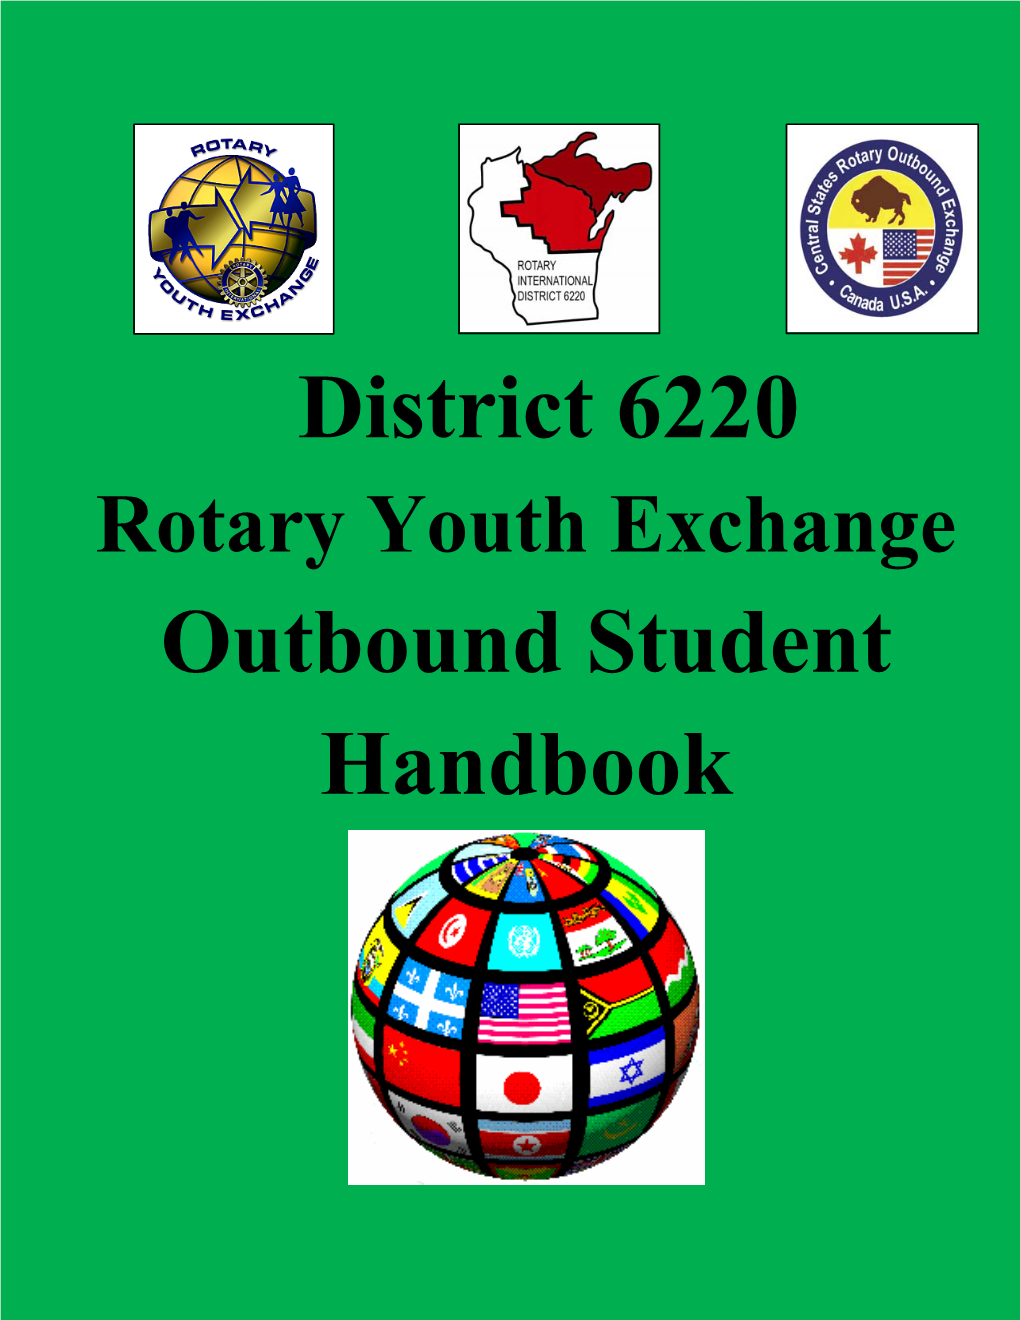 District 6220 Outbound Student Handbook